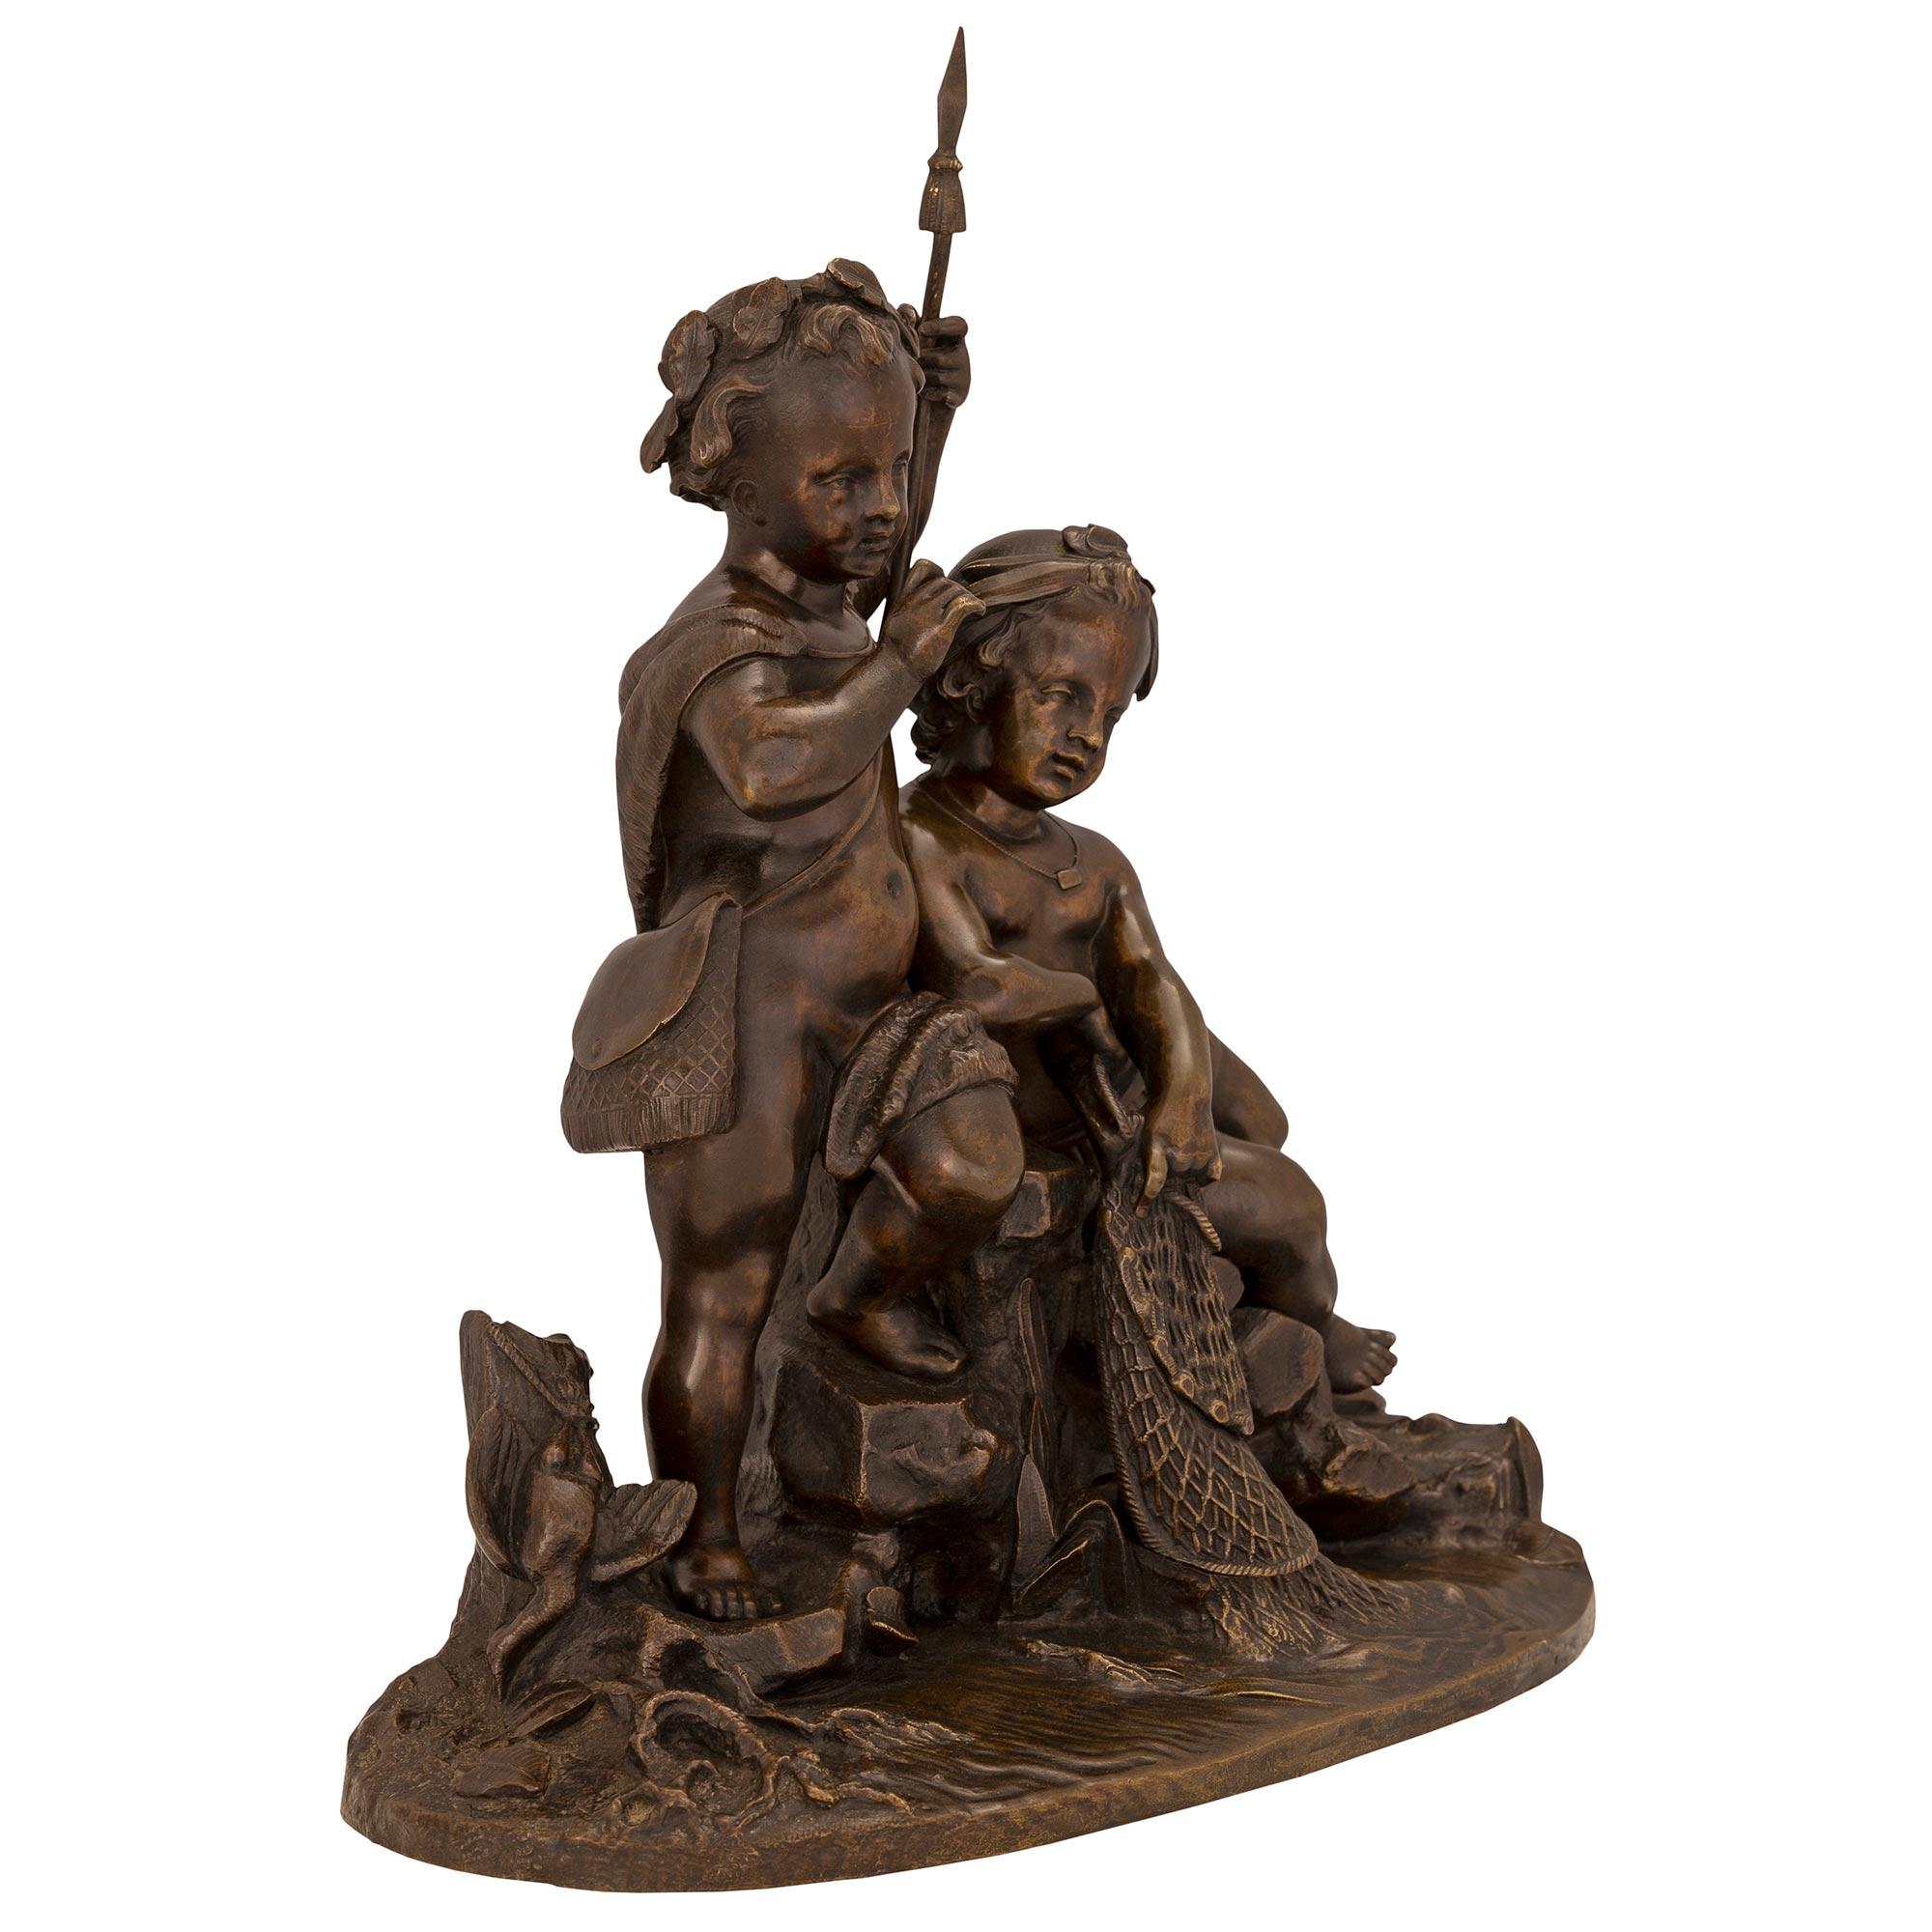 Charmante statue en bronze patiné du XIXe siècle représentant deux jeunes garçons en train de pêcher. La statue est surélevée par une base oblongue avec un fin motif de terre avec une flore aquatique poussant à côté d'impressionnants rochers et d'un